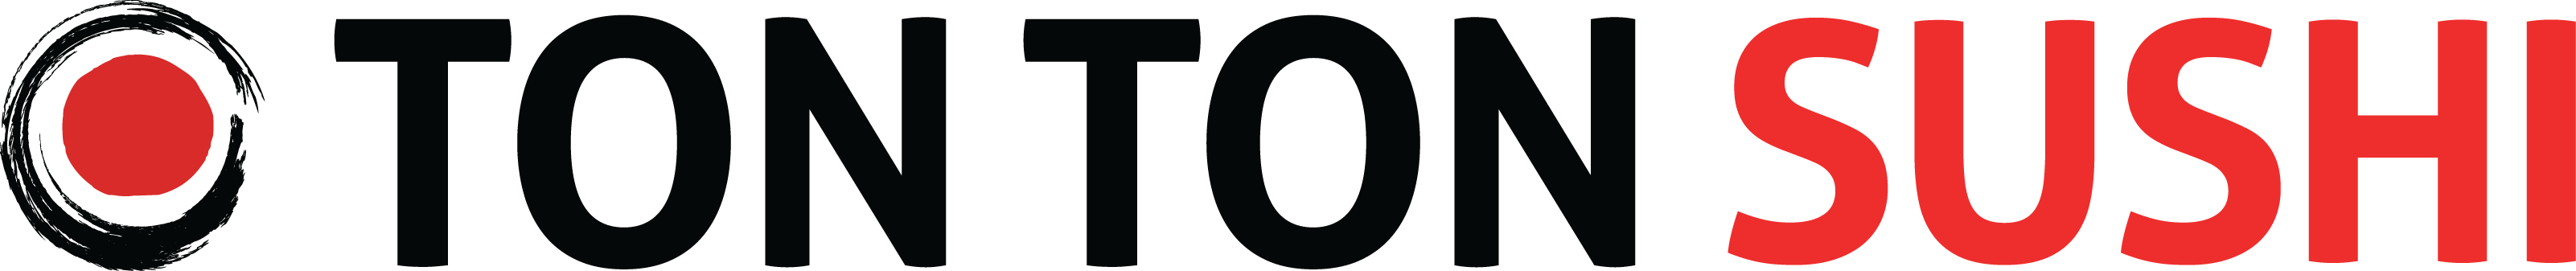 Ton-Ton-Sushi_logo